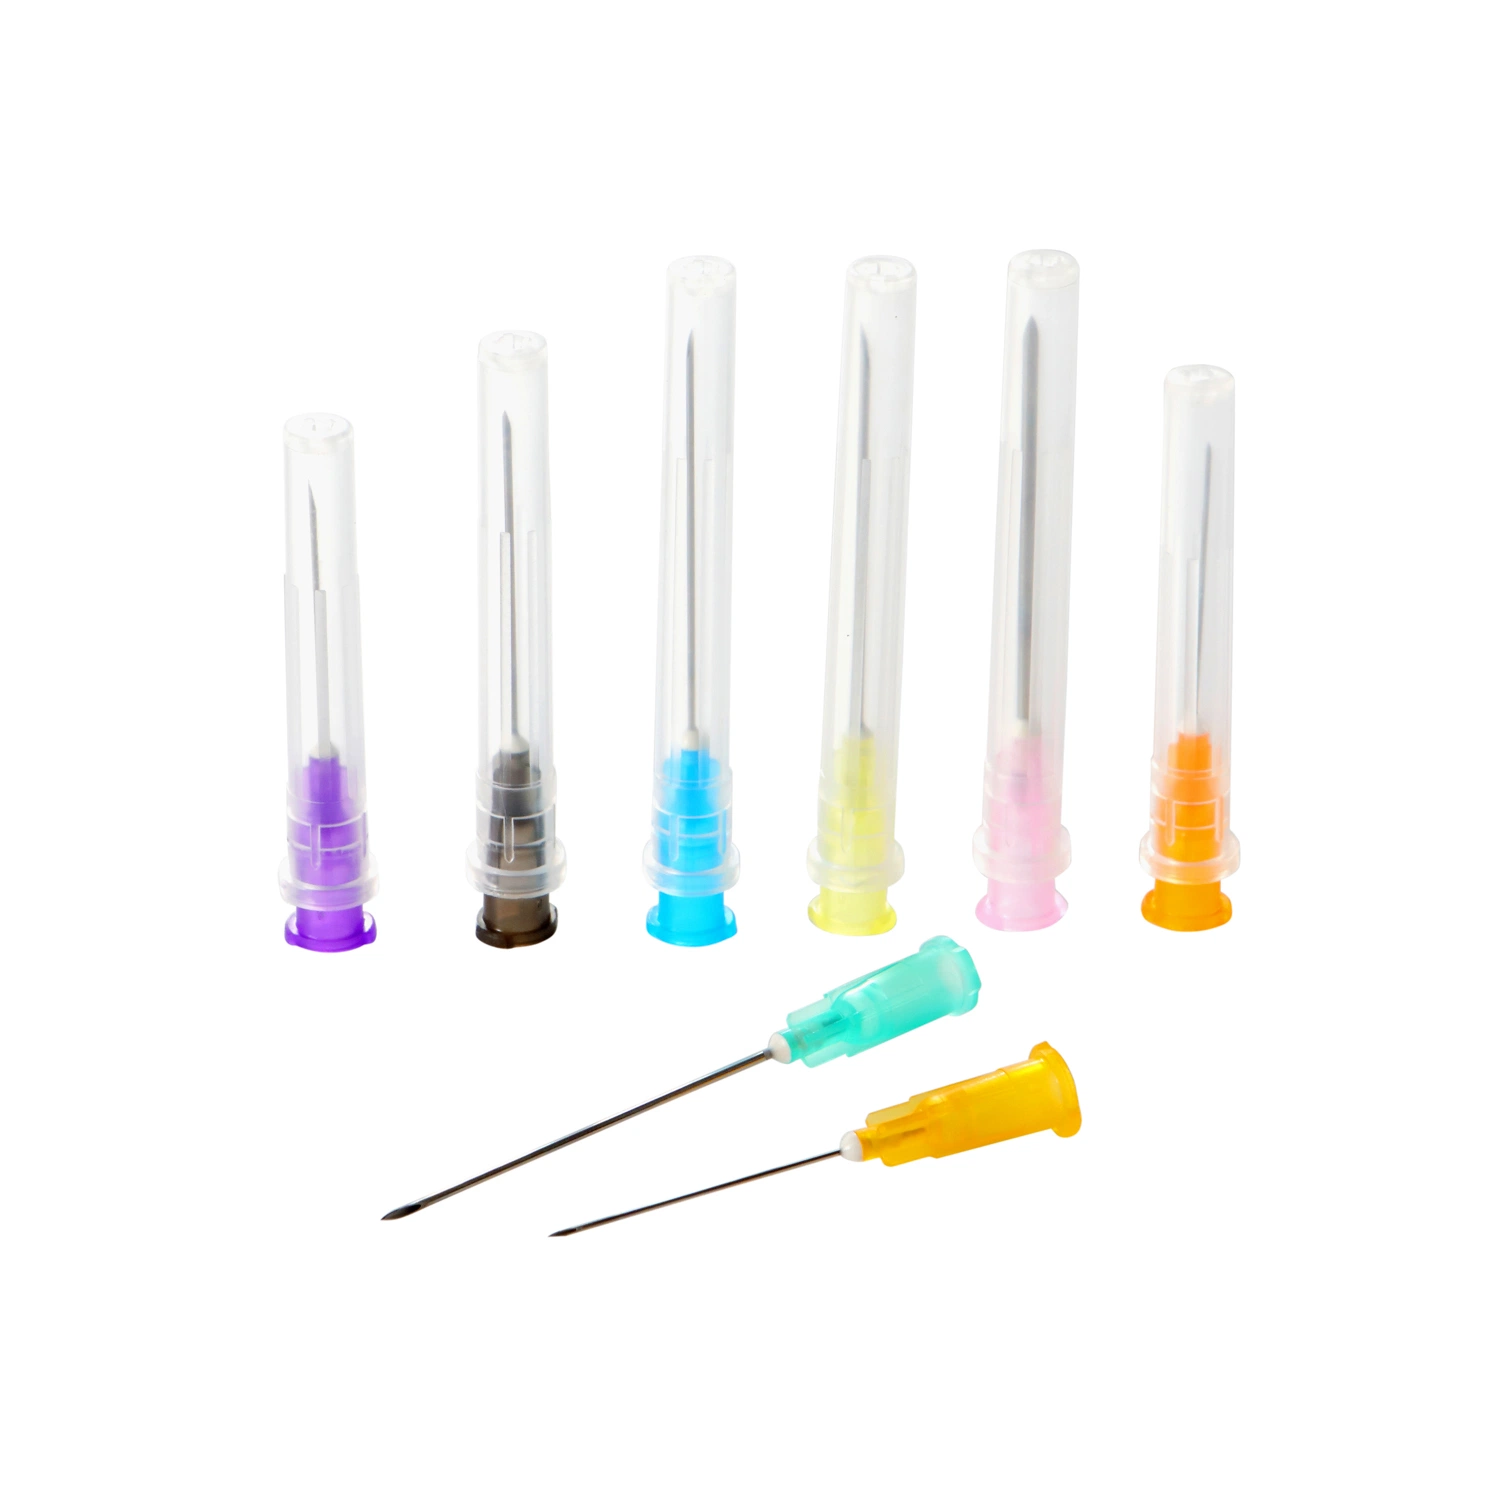 Agulha estéril descartável para seringa hipodérmica de insulina estéril com CE.